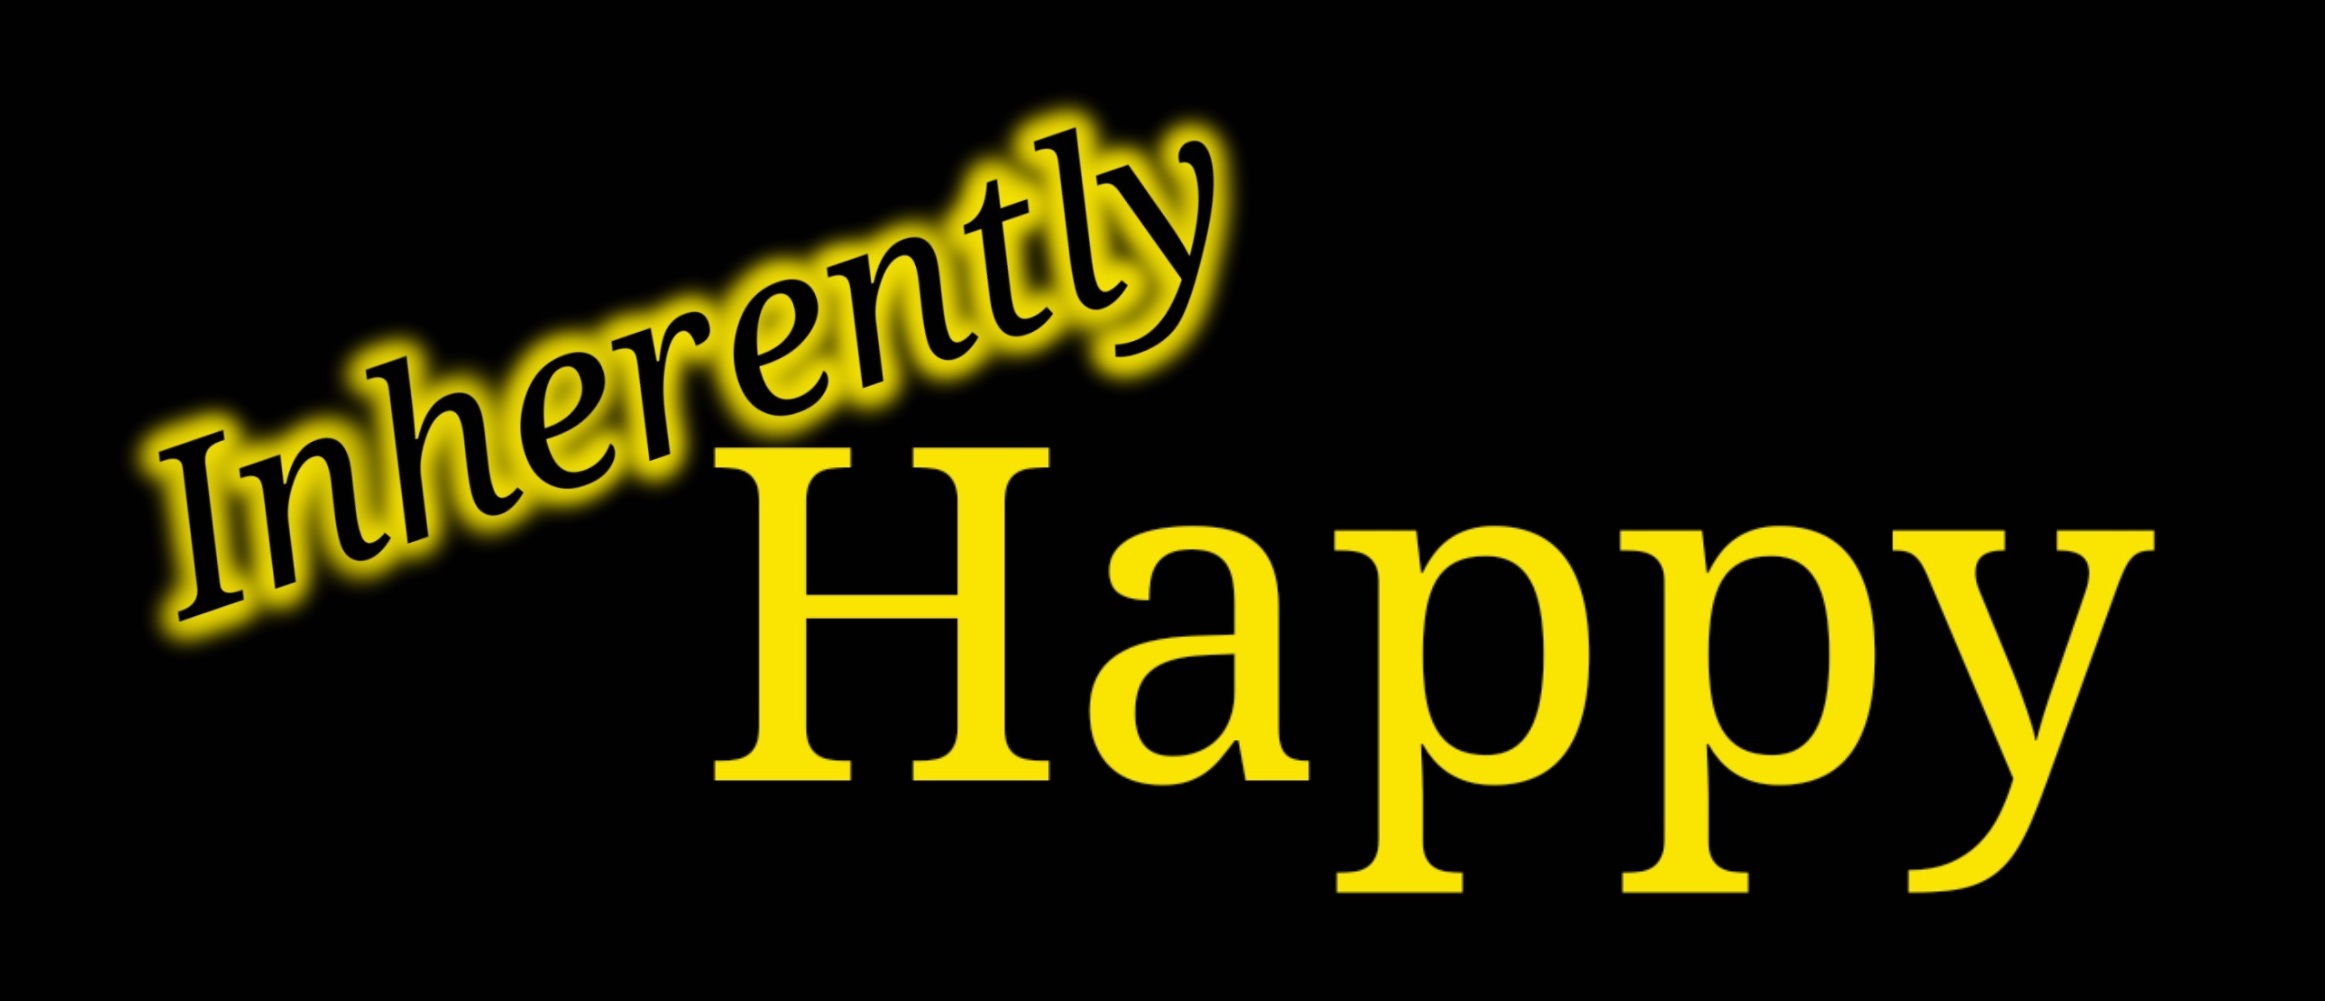 Inherently Happy